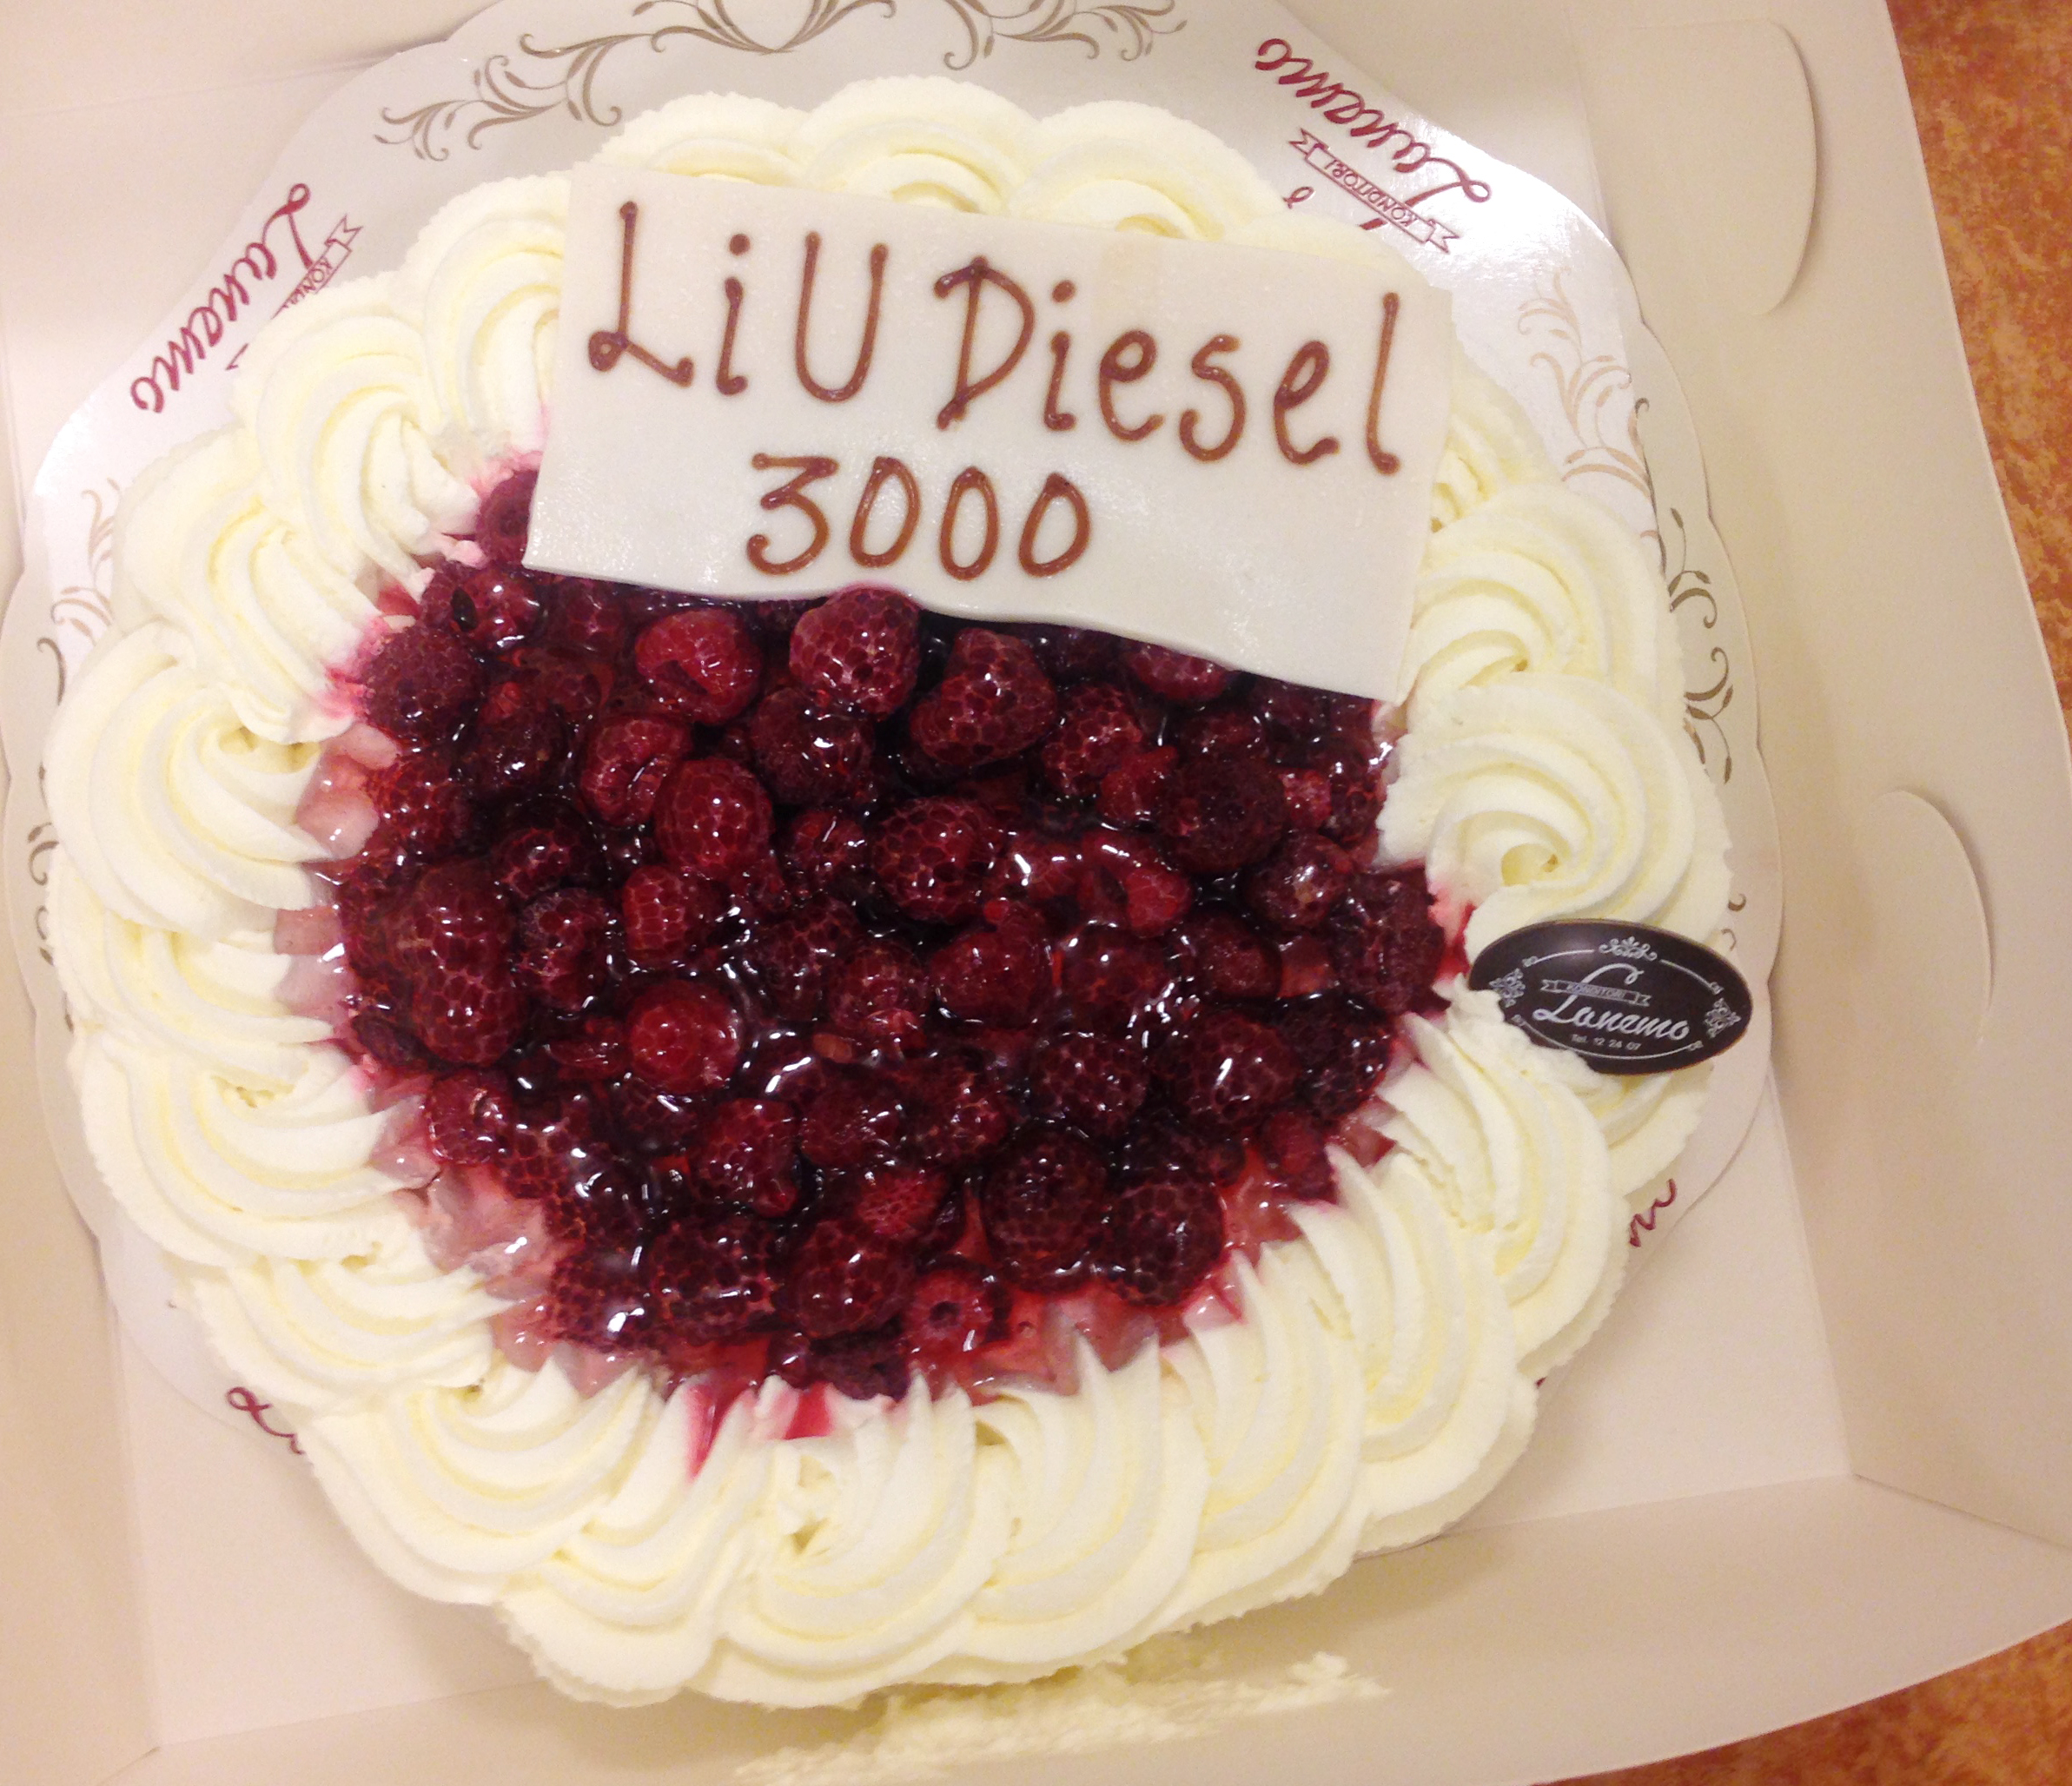 3000 nedladdningar firas med tårta